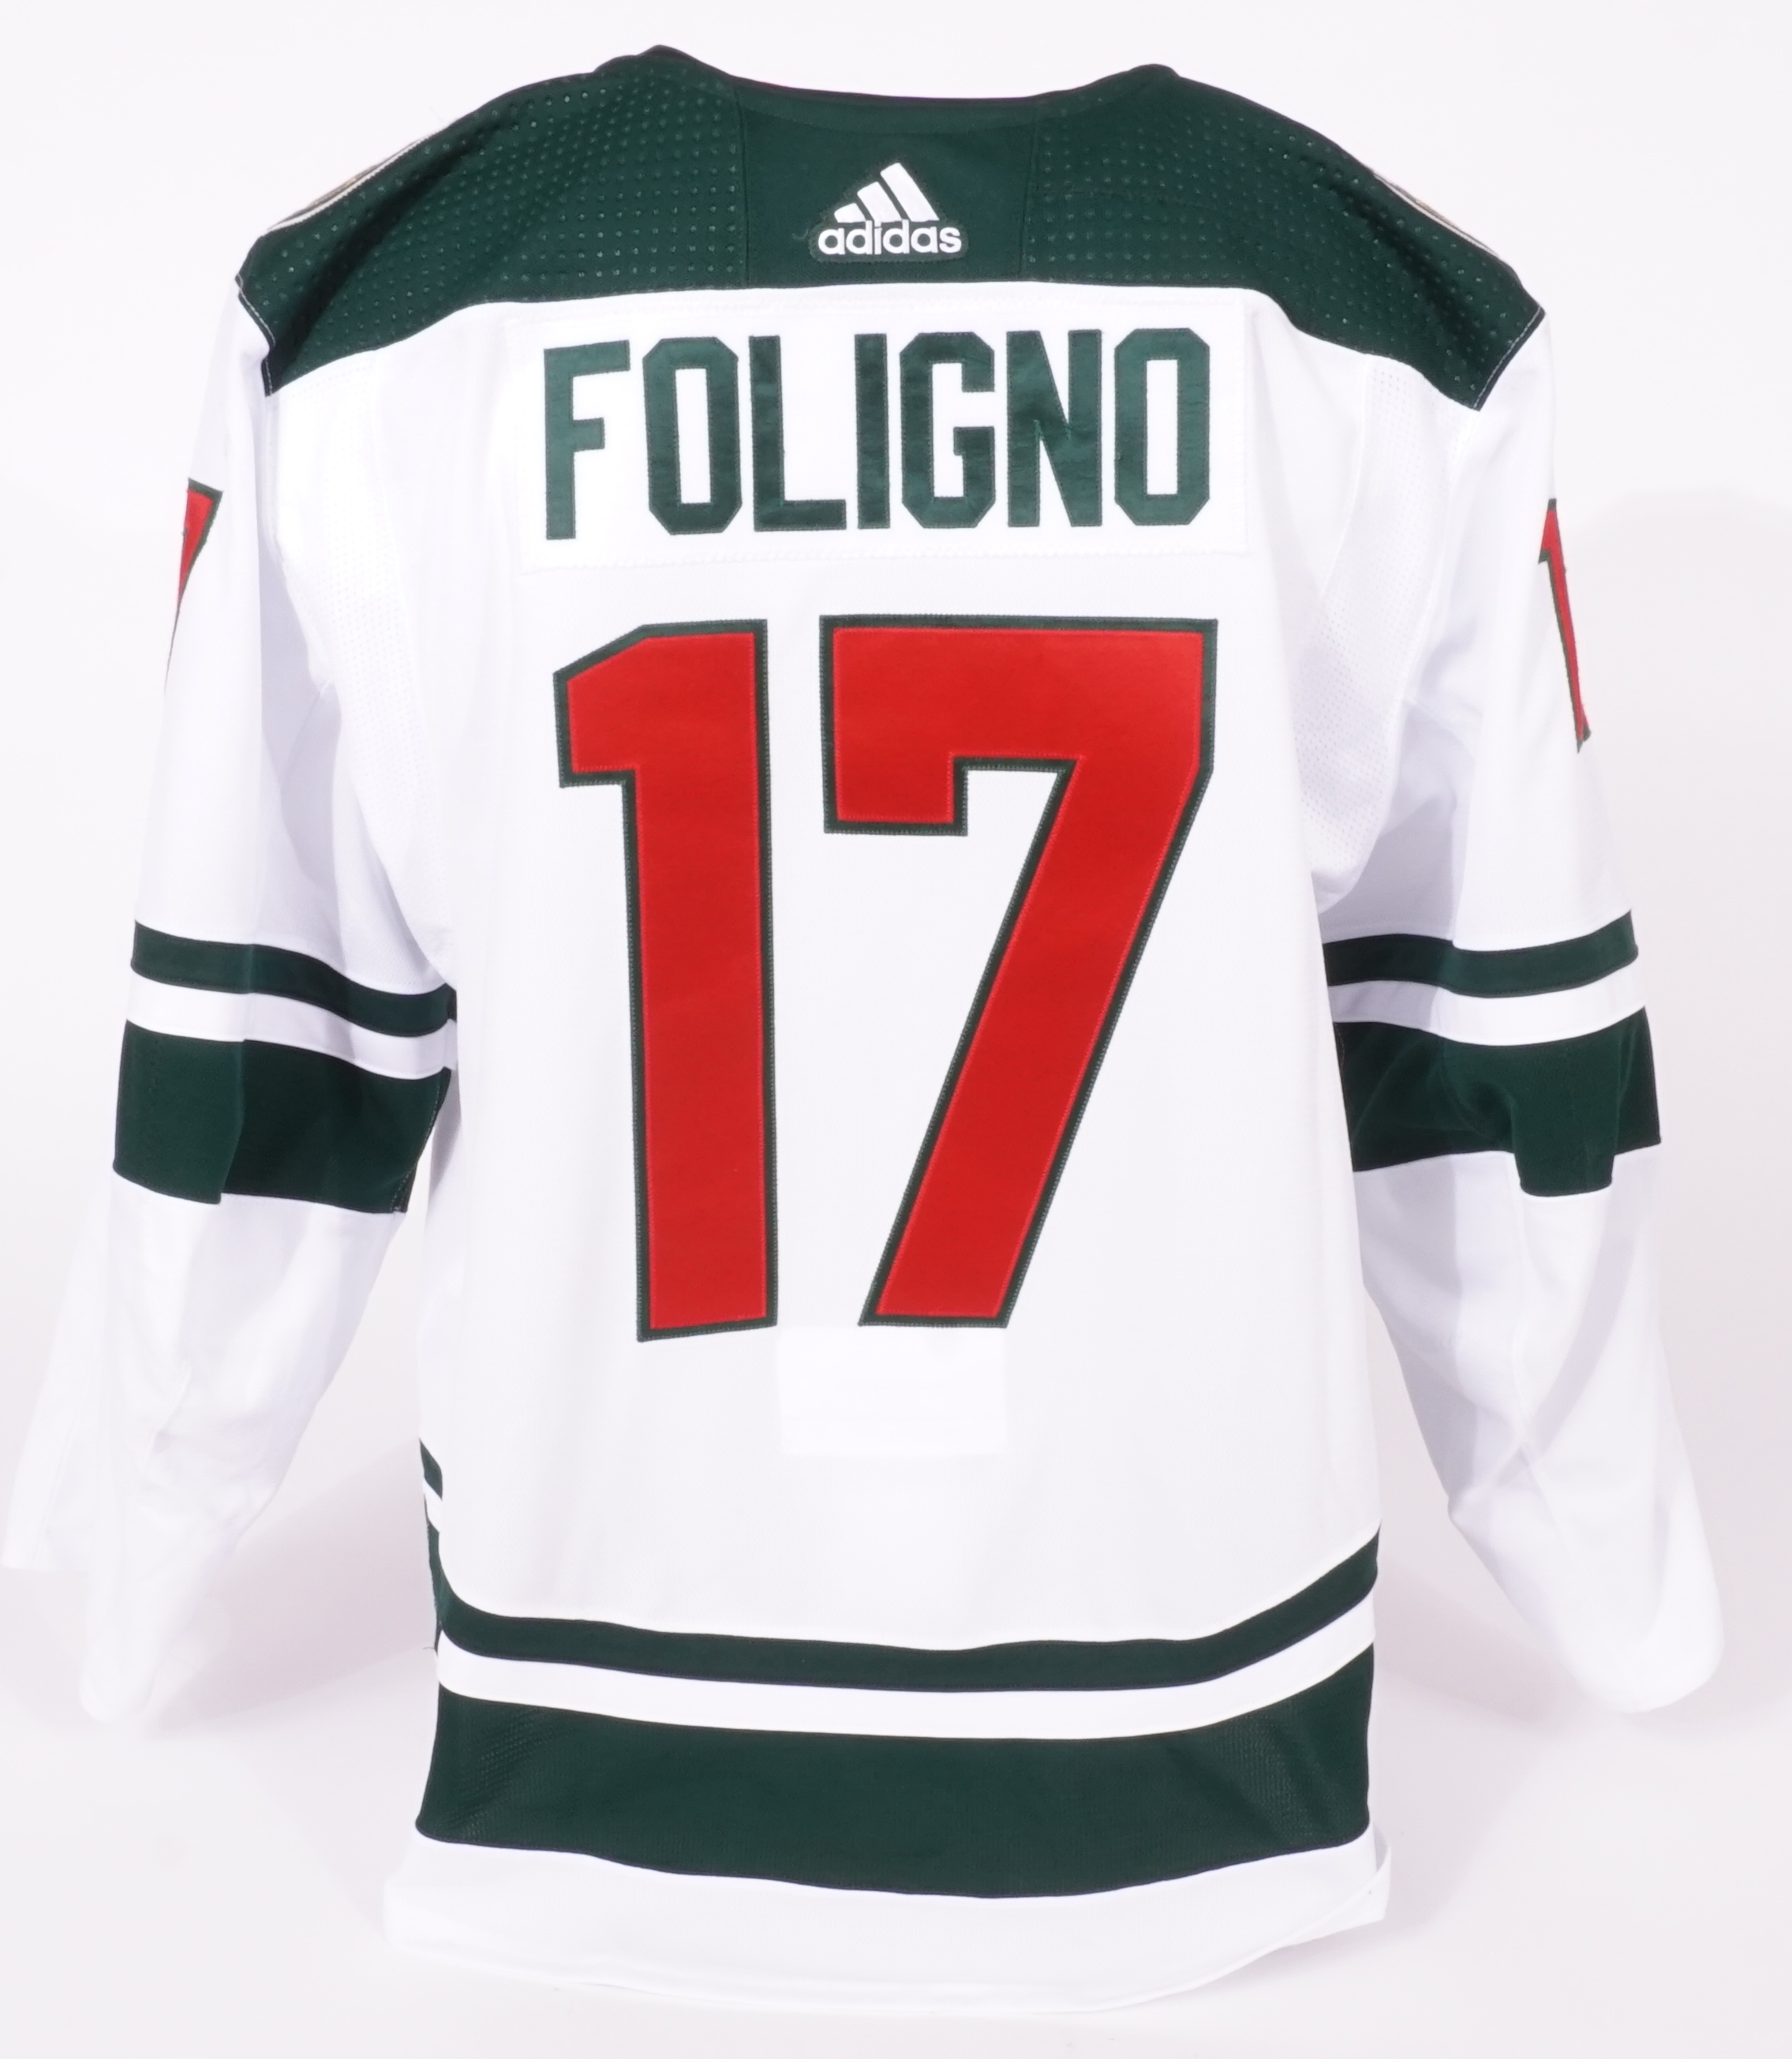 Marcus Foligno #17 Player Patch - Minnesota Wild Hockey Club